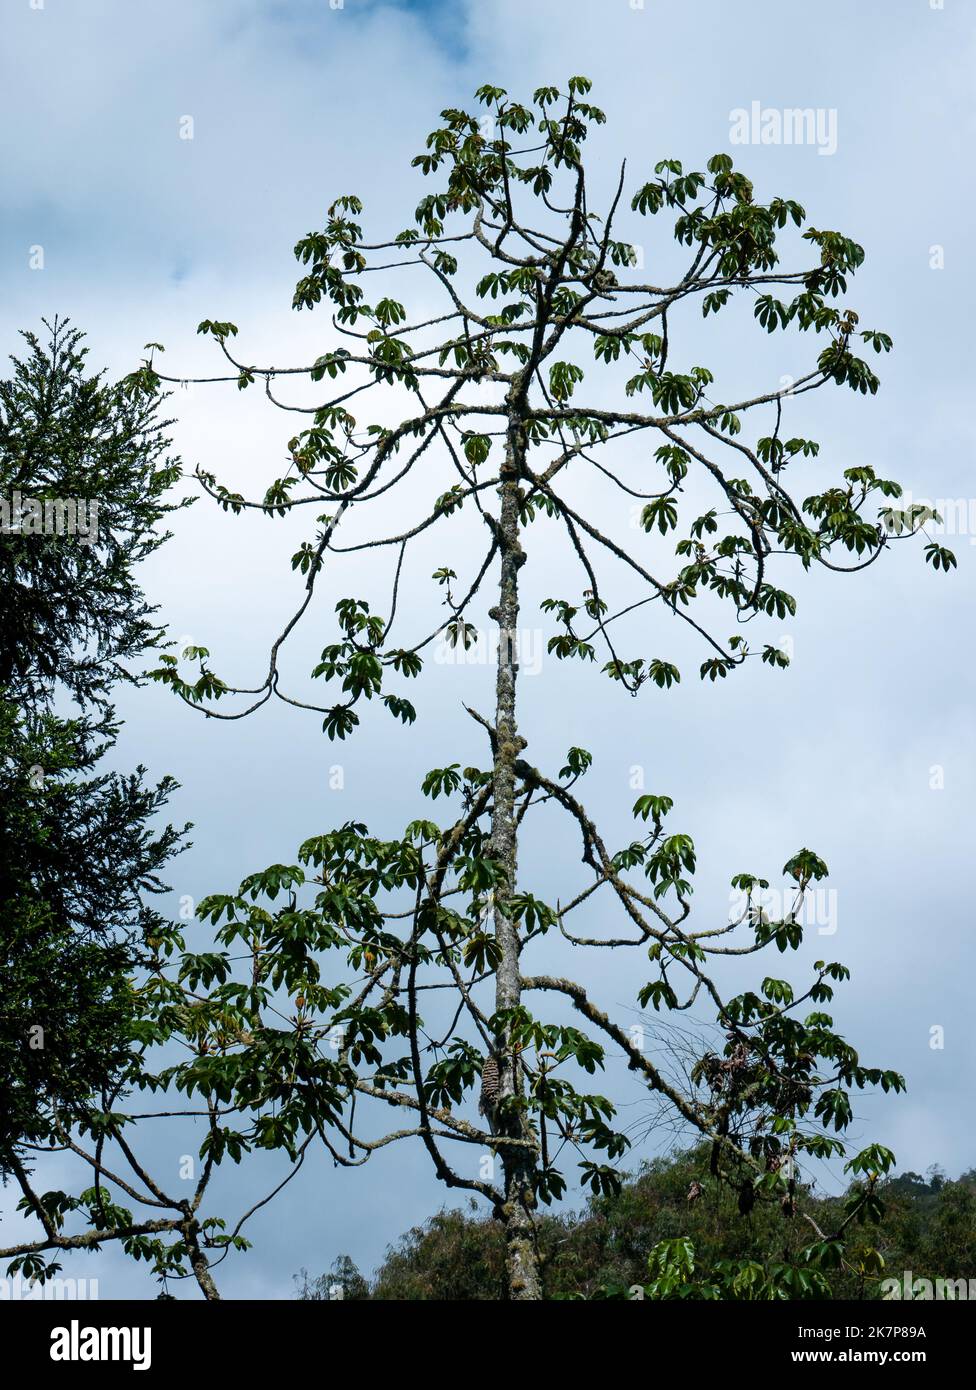 Zu den großen Bäumen mit gebräuchlichen Namen gehören Trompetenbaum, Pop-a-Gun, Baum der Faulheit und Snakewood Tree (Cecropia obtusifolia) in a Cloudy Day Stockfoto